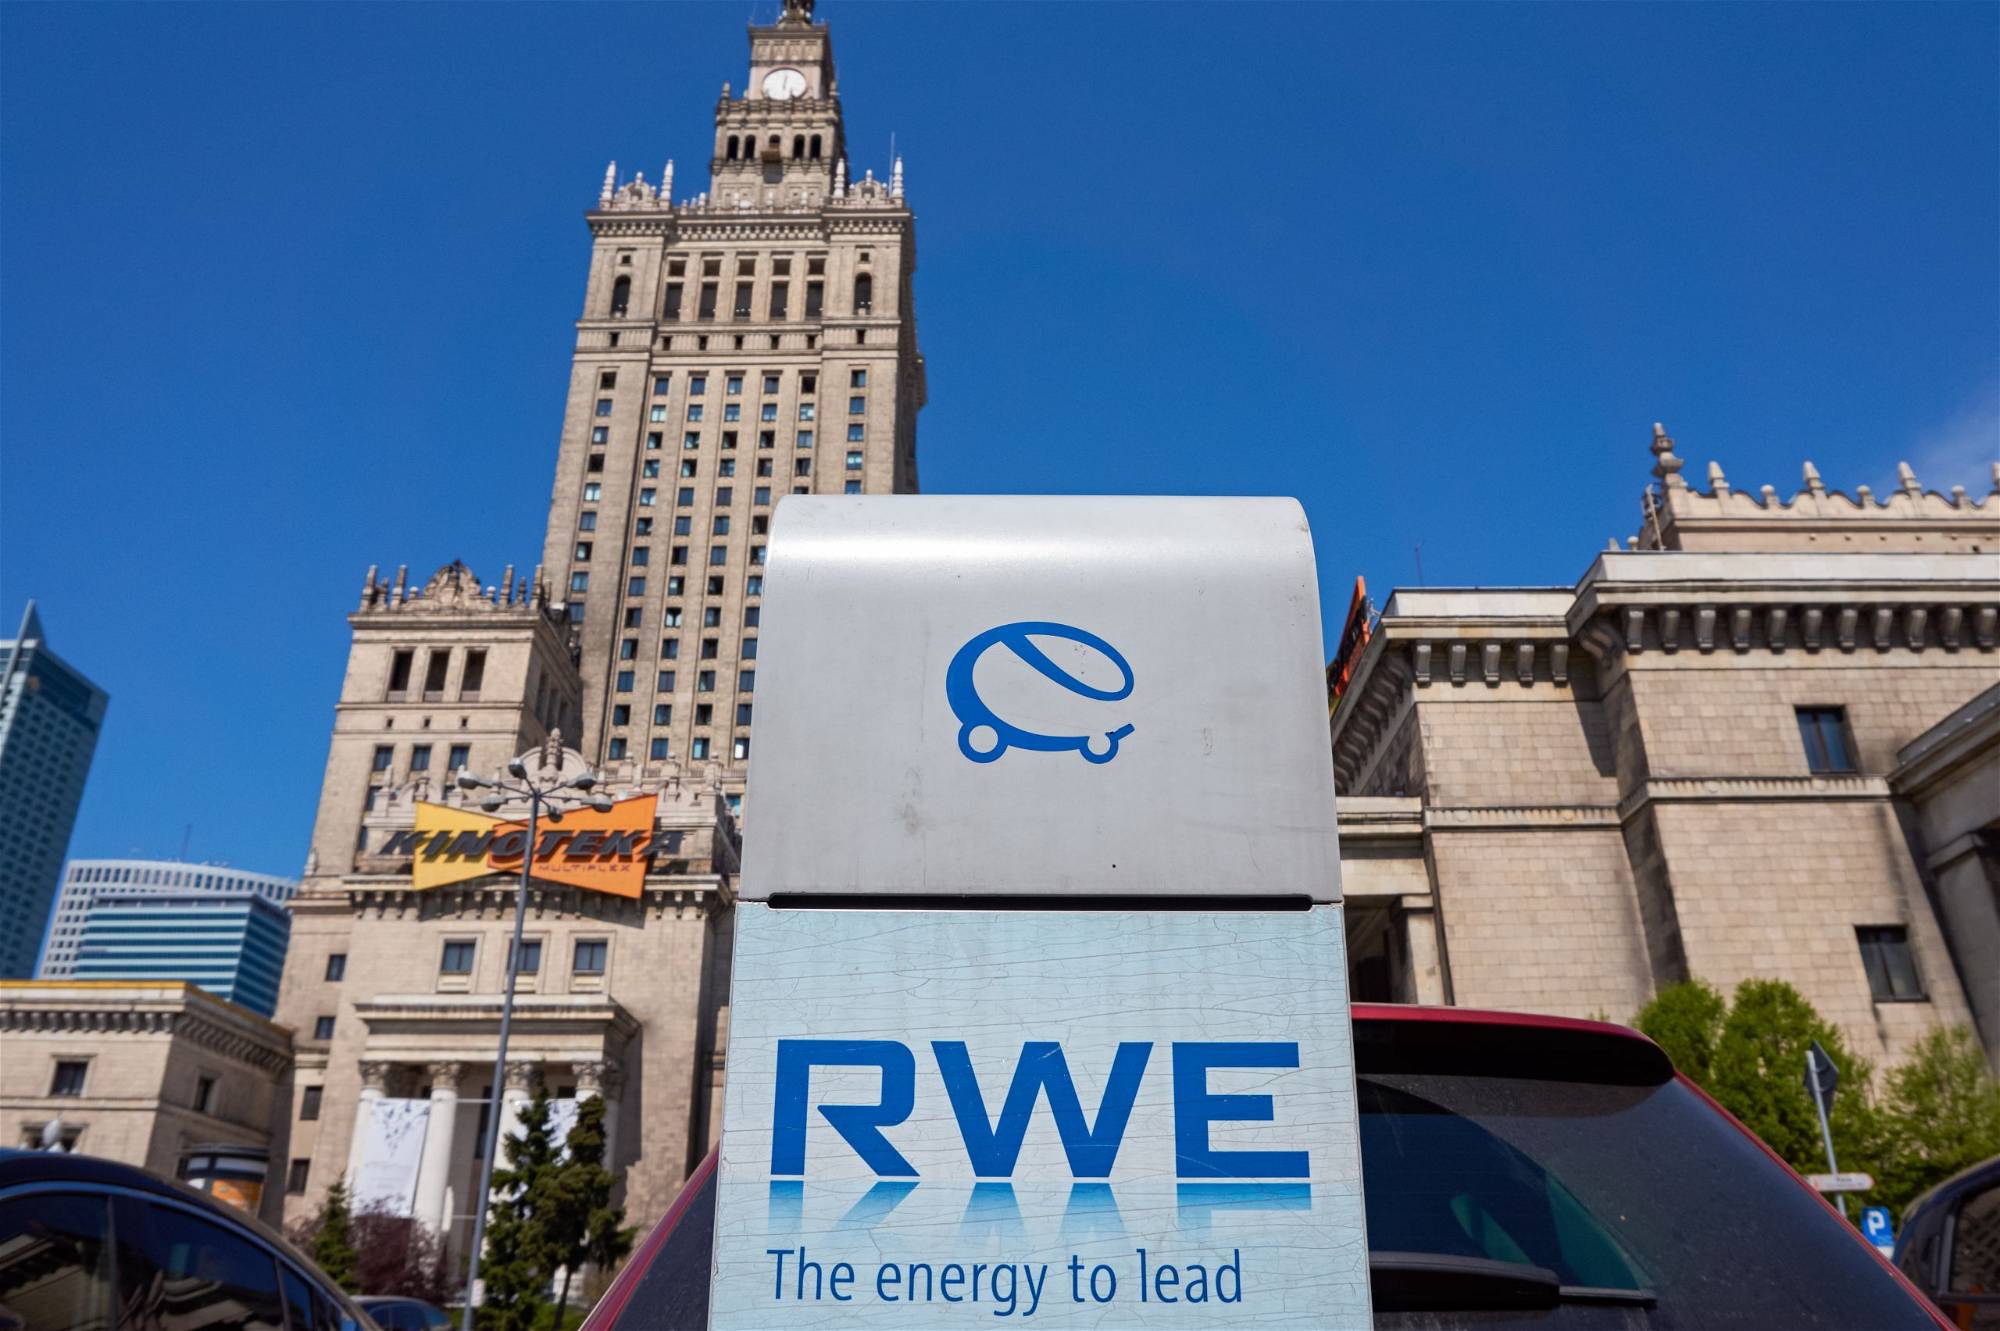 RWE-Aktie: Sollten Sie jetzt kaufen?